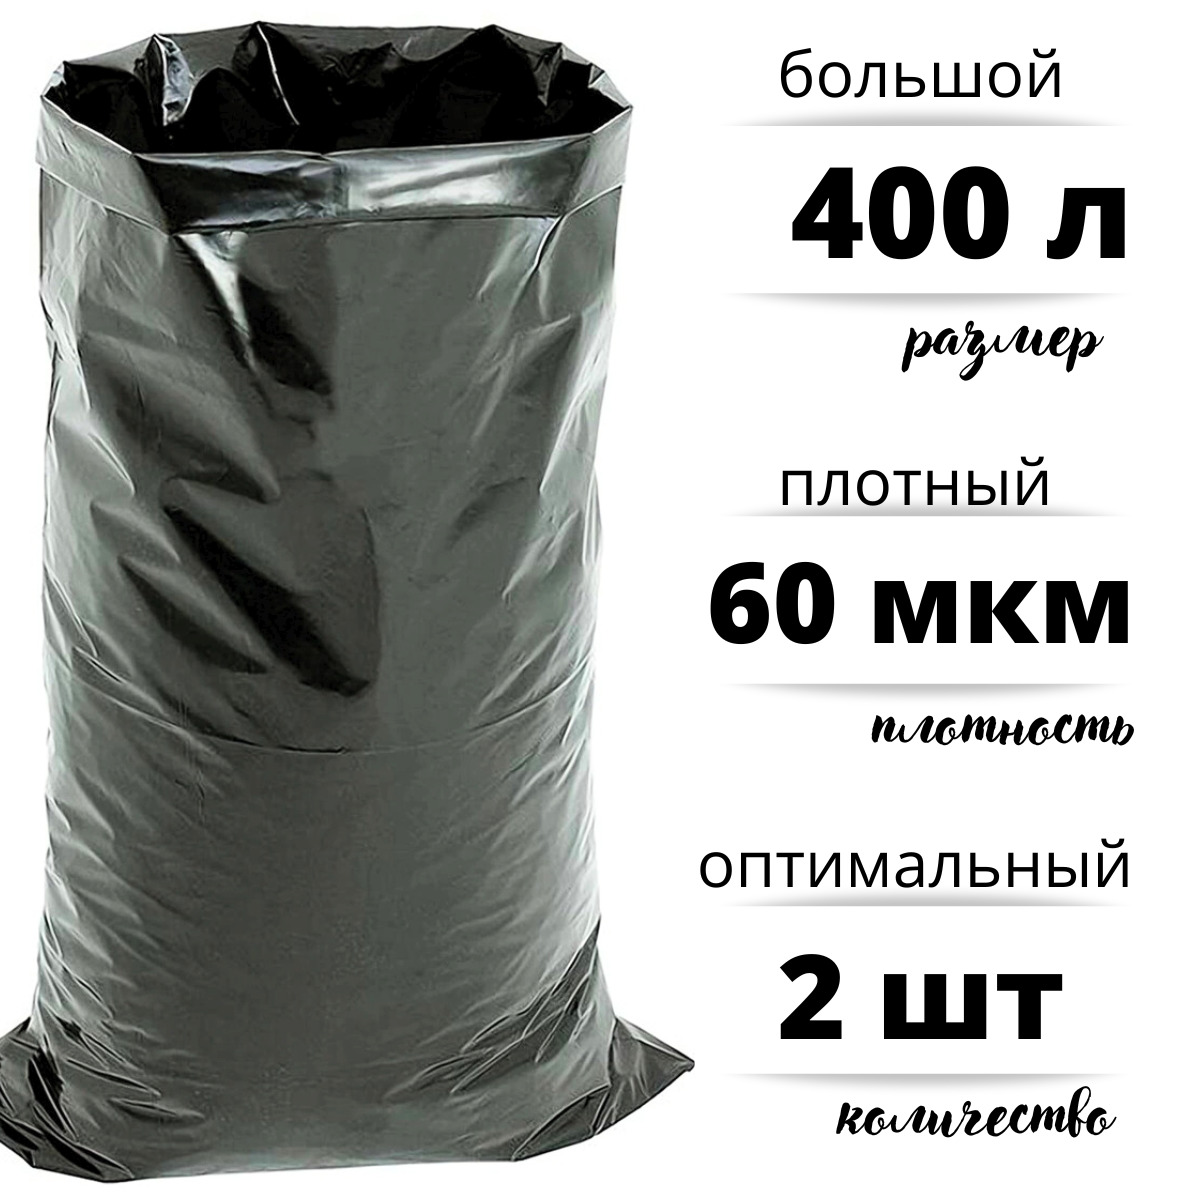 Мешки для мусора БытСервис полиэтиленовые 400 л особо плотные ПВД 60 мкм 2шт R544